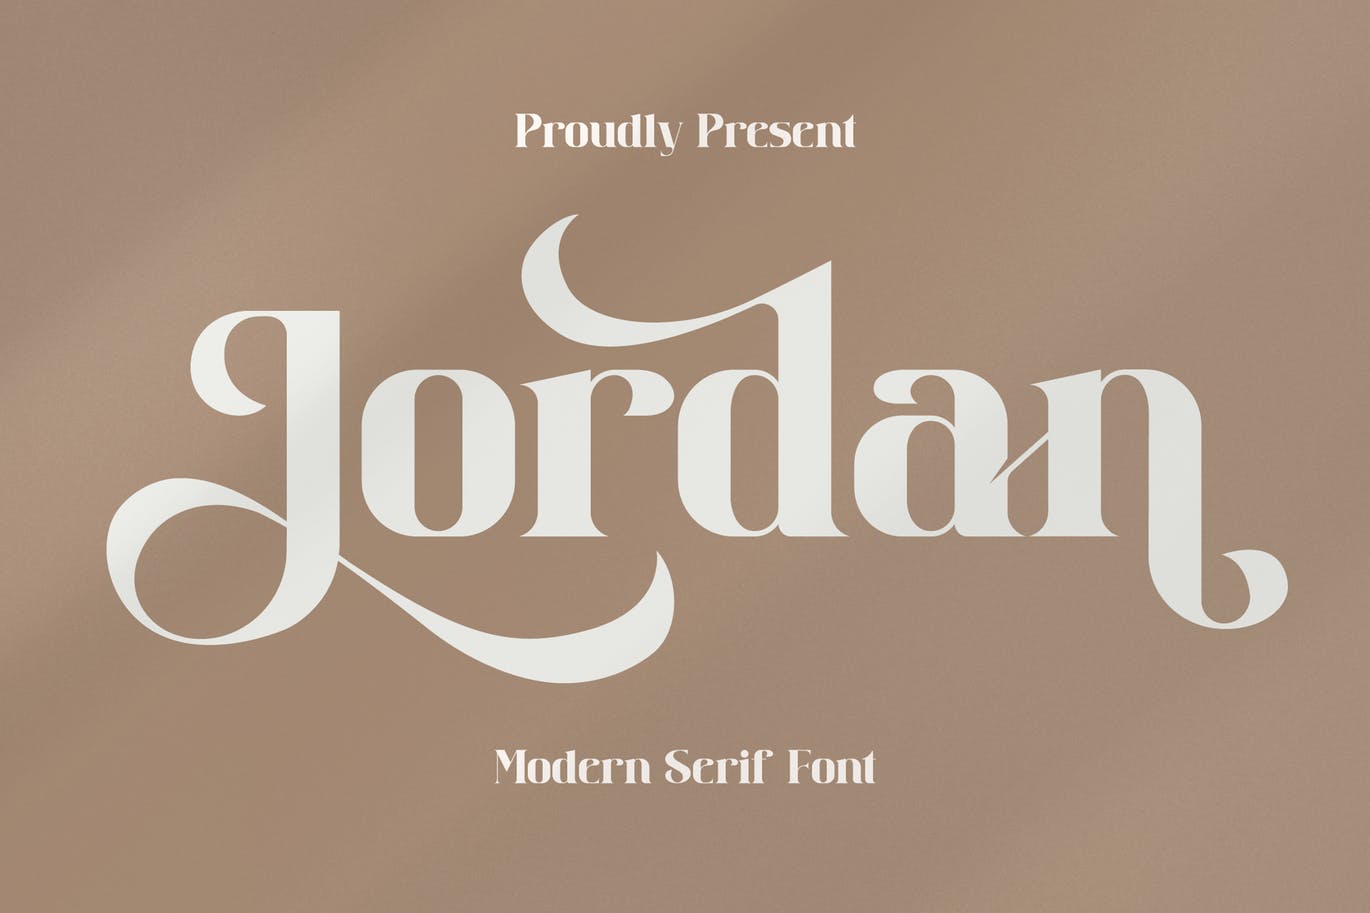 品牌装饰衬线字体素材 Jordan Serif Font 设计素材 第1张